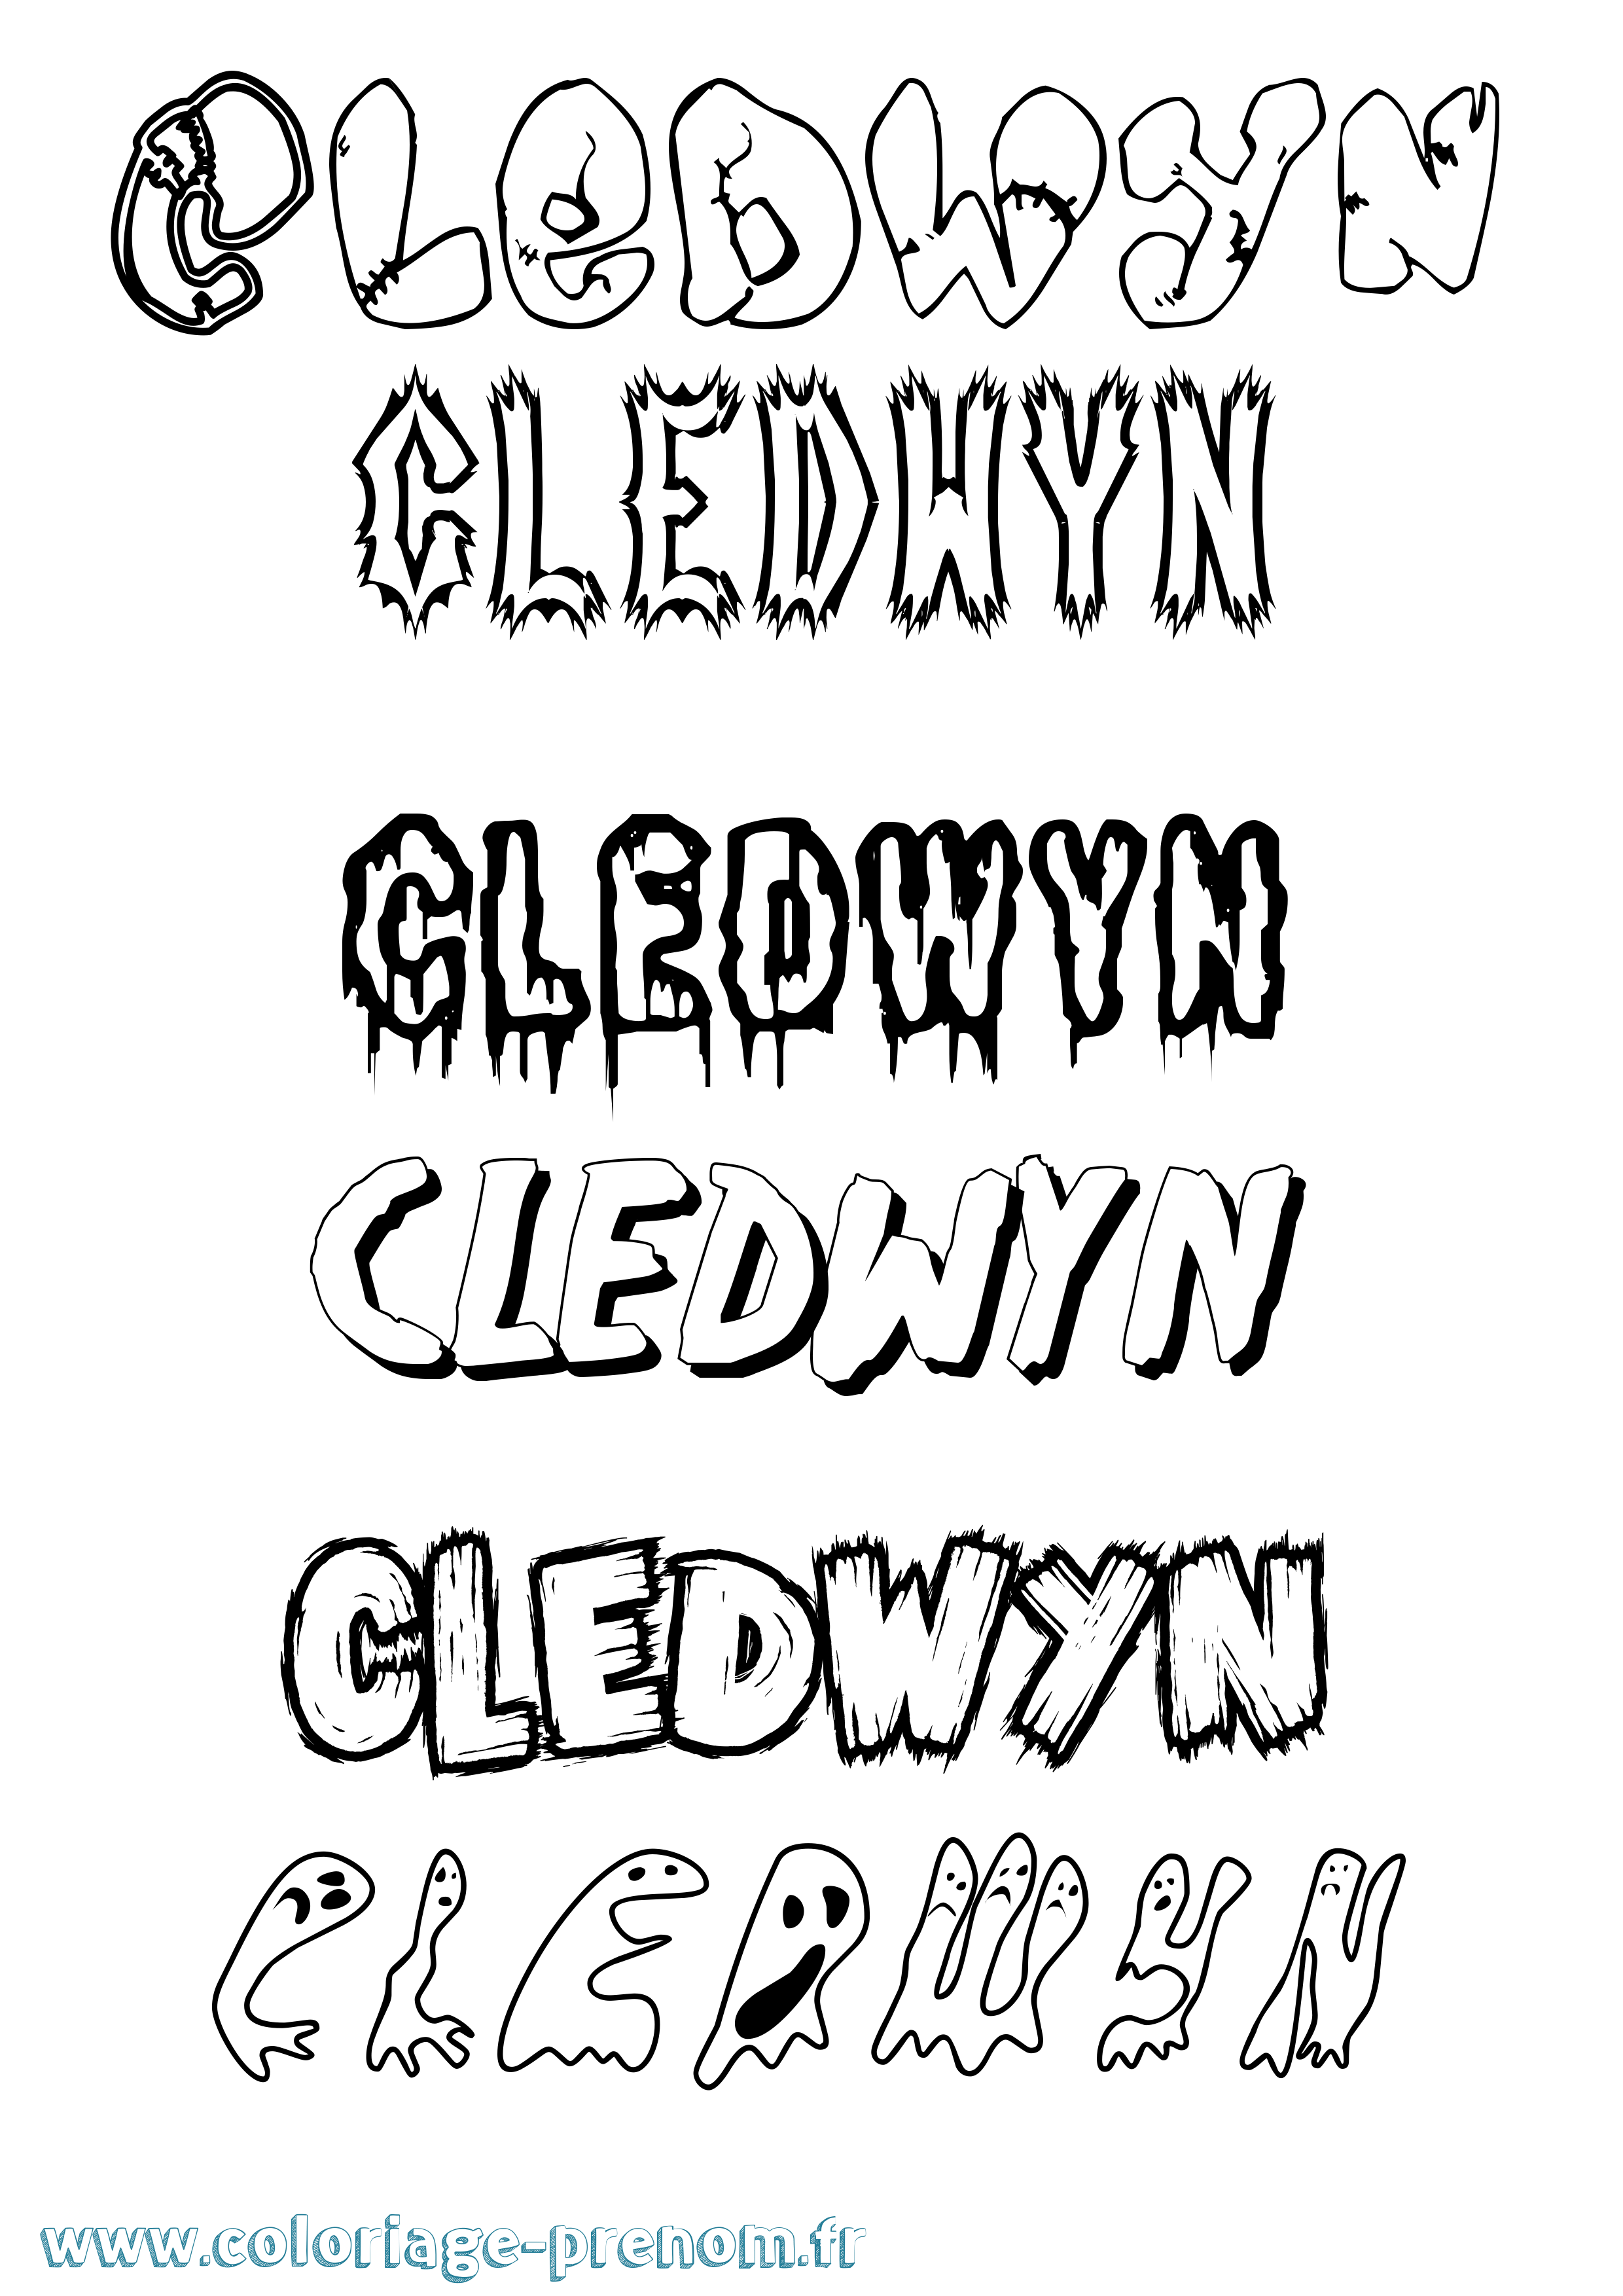 Coloriage prénom Cledwyn Frisson